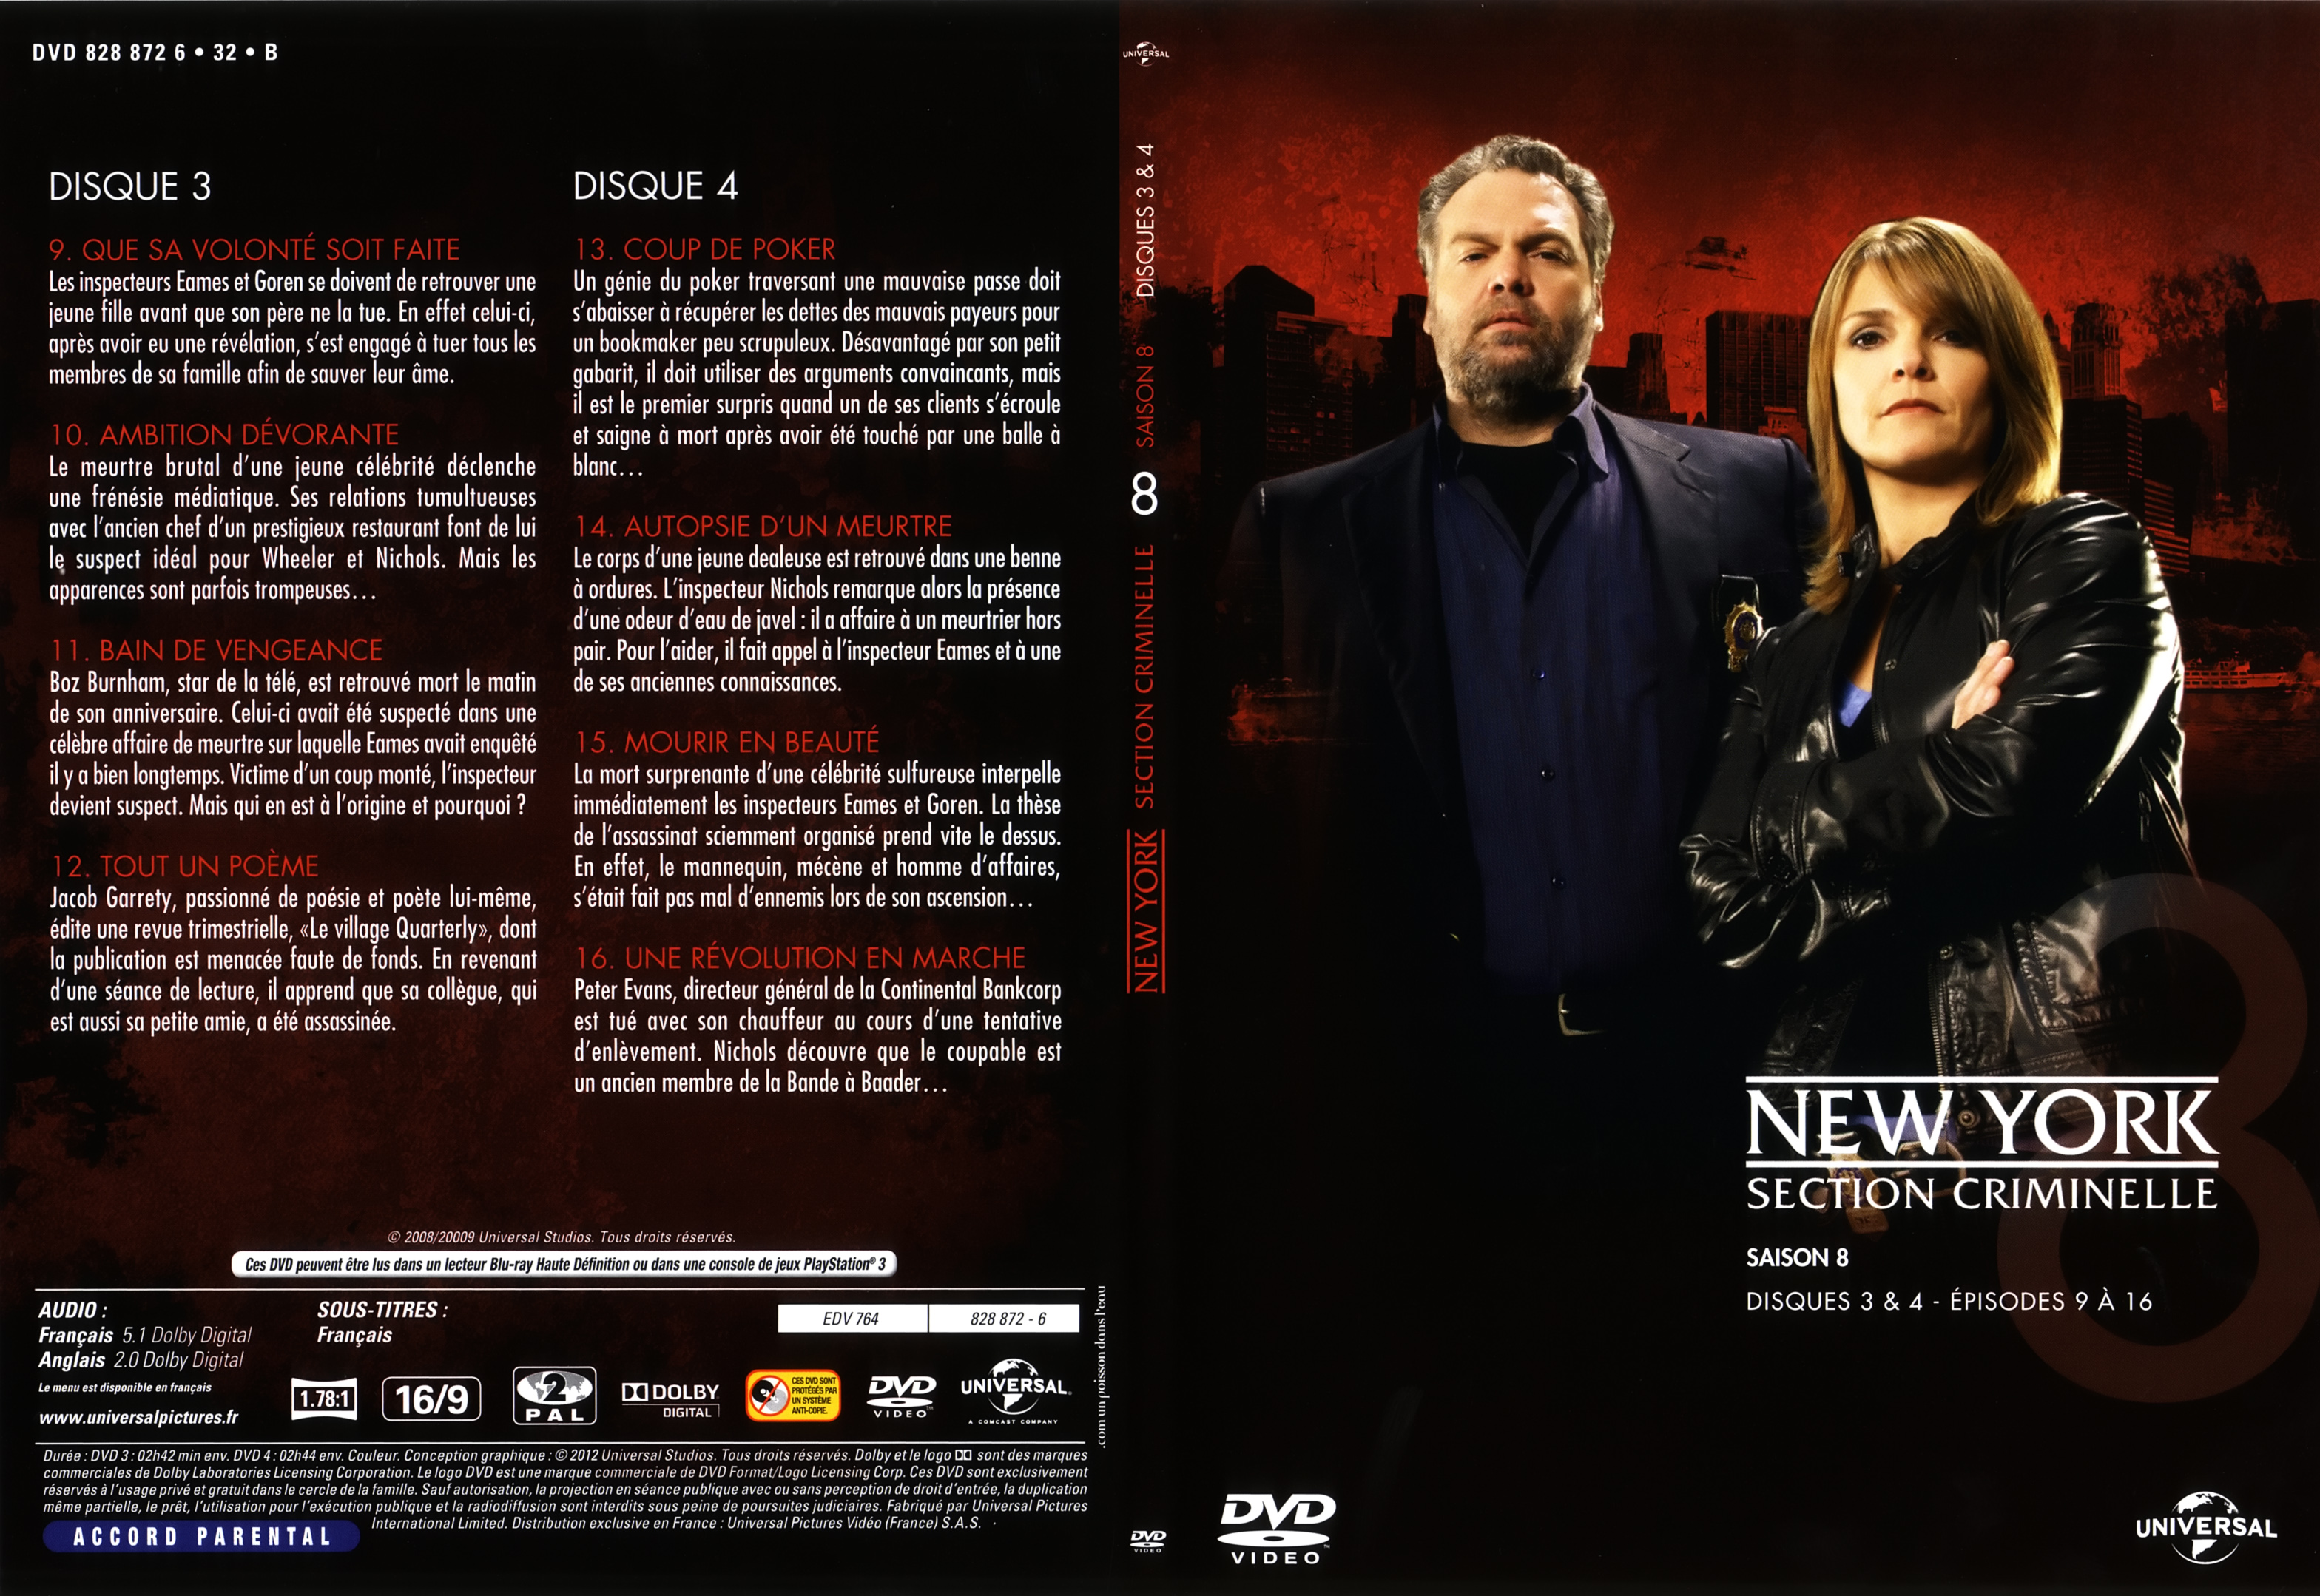 Jaquette DVD New York section criminelle saison 8 DVD 2